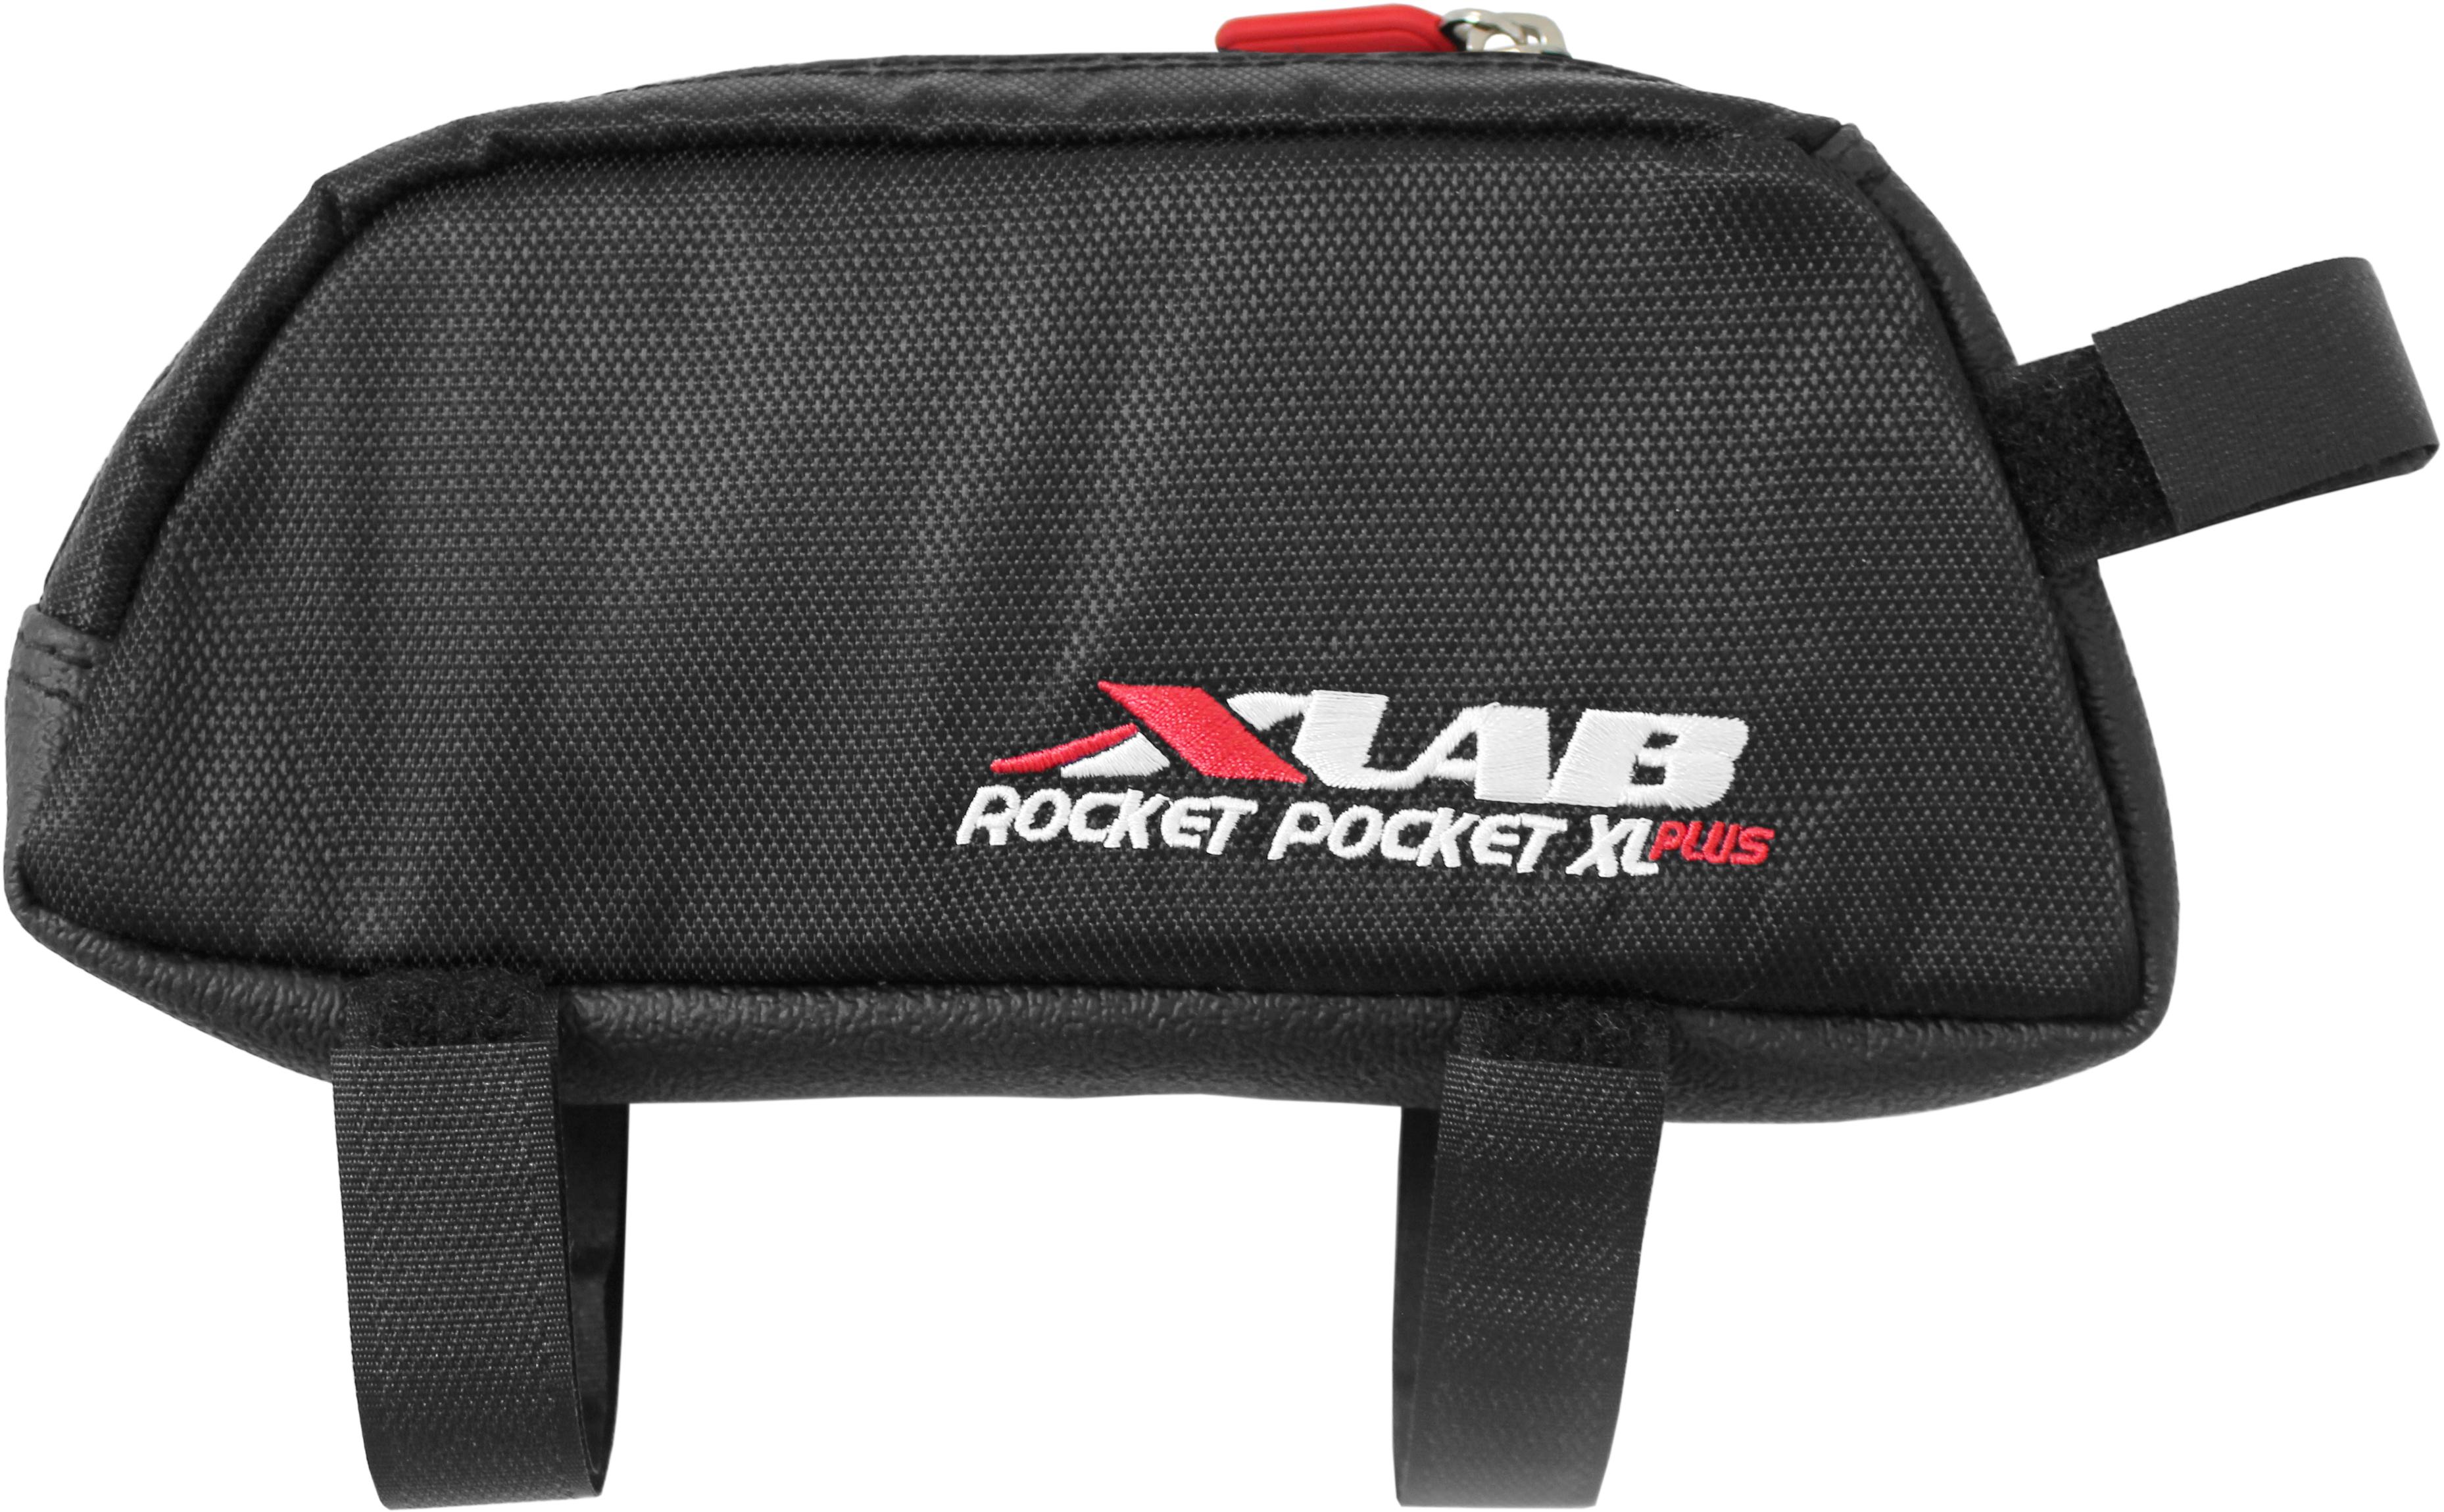 Xlab Pocket Rocket Plus Tube Bag (xl)  Black